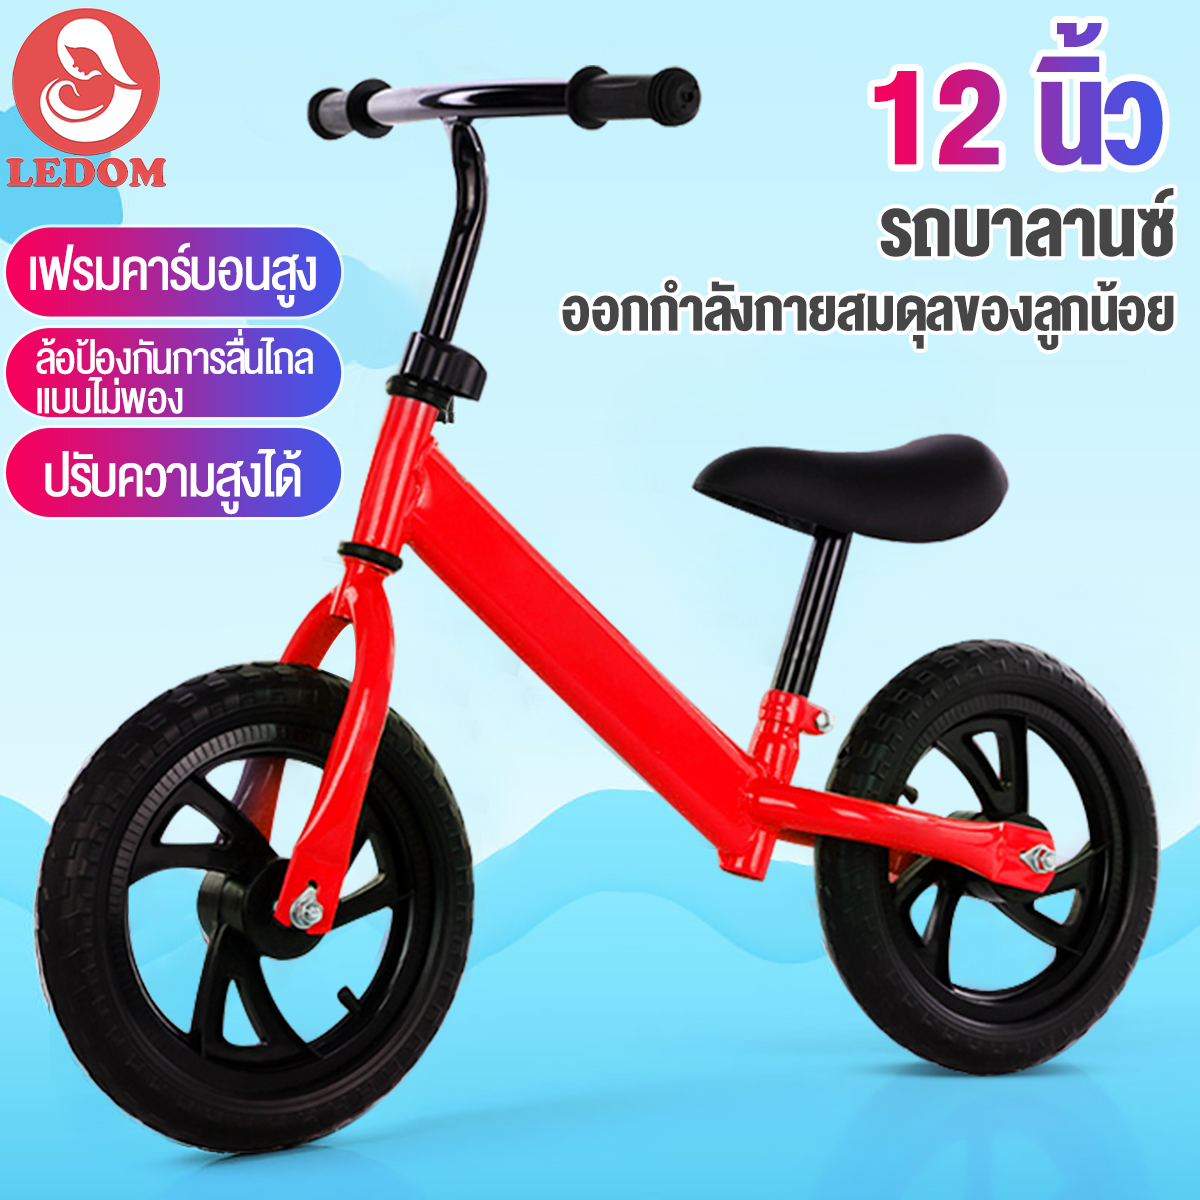 LEDOM จักรยานฝึกการทรงตัว 12นิ้ว จักรยานเด็ก จักรยานขาไถ จักรยาน รถขาไถเด็ก จักรยานทรงตัว3in1 รถจักยานทรงตัว CNY ของขวัญ